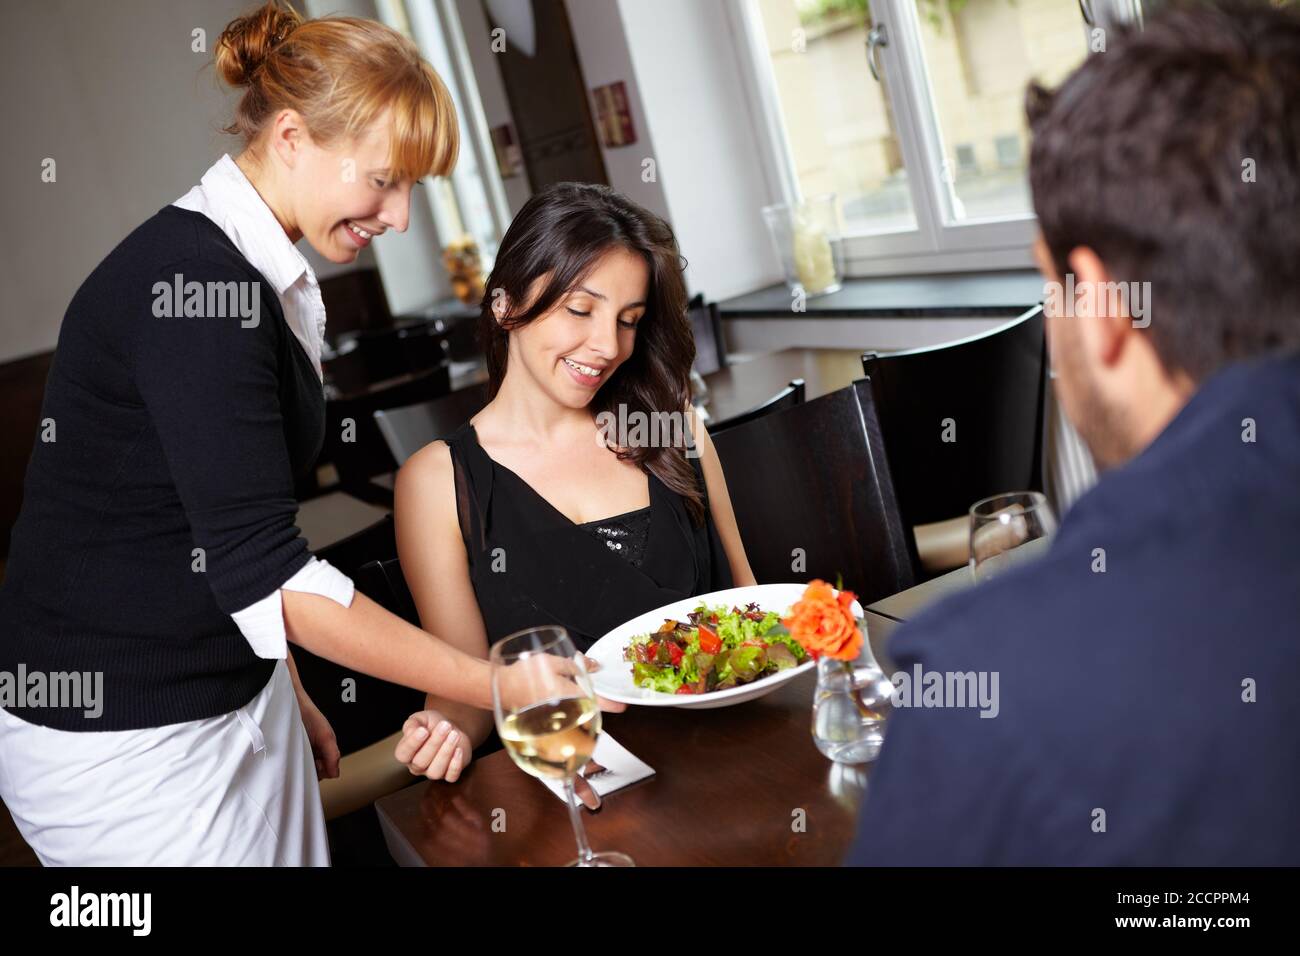 Kellnerin mit Salat serviert eine Frau im Restaurant Stockfoto